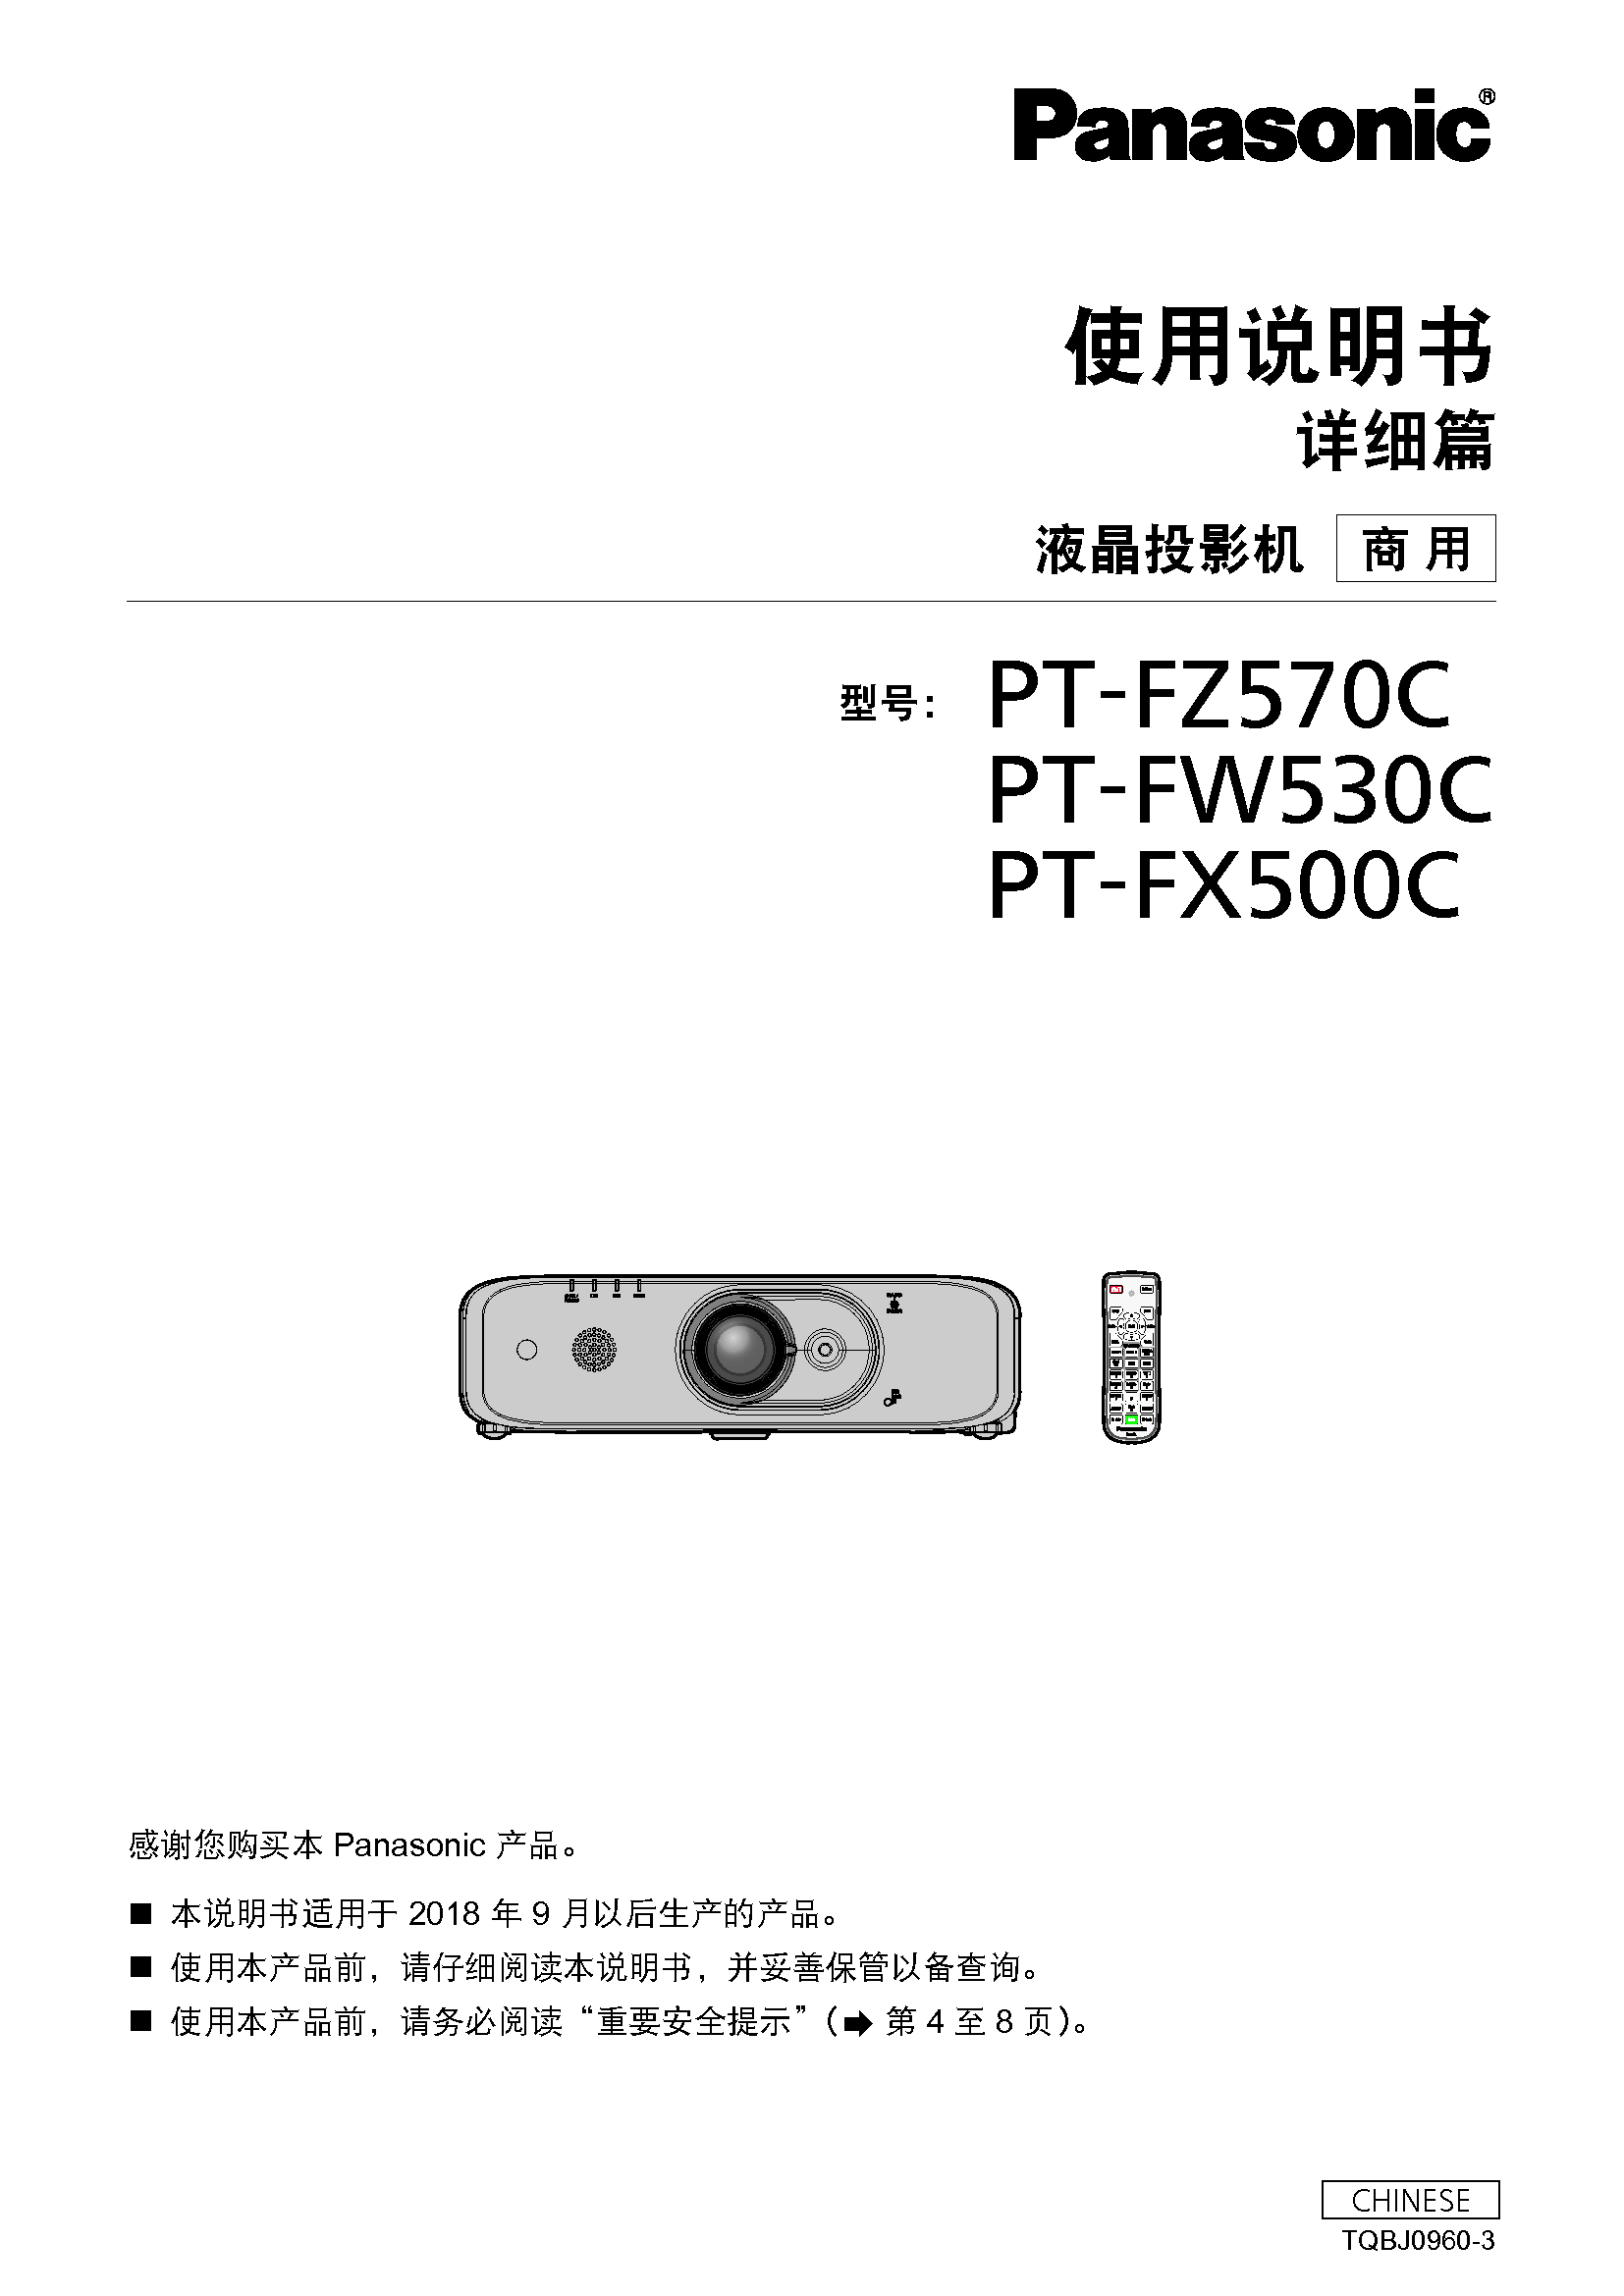 松下 Panasonic PT-FW530C 使用说明书 封面